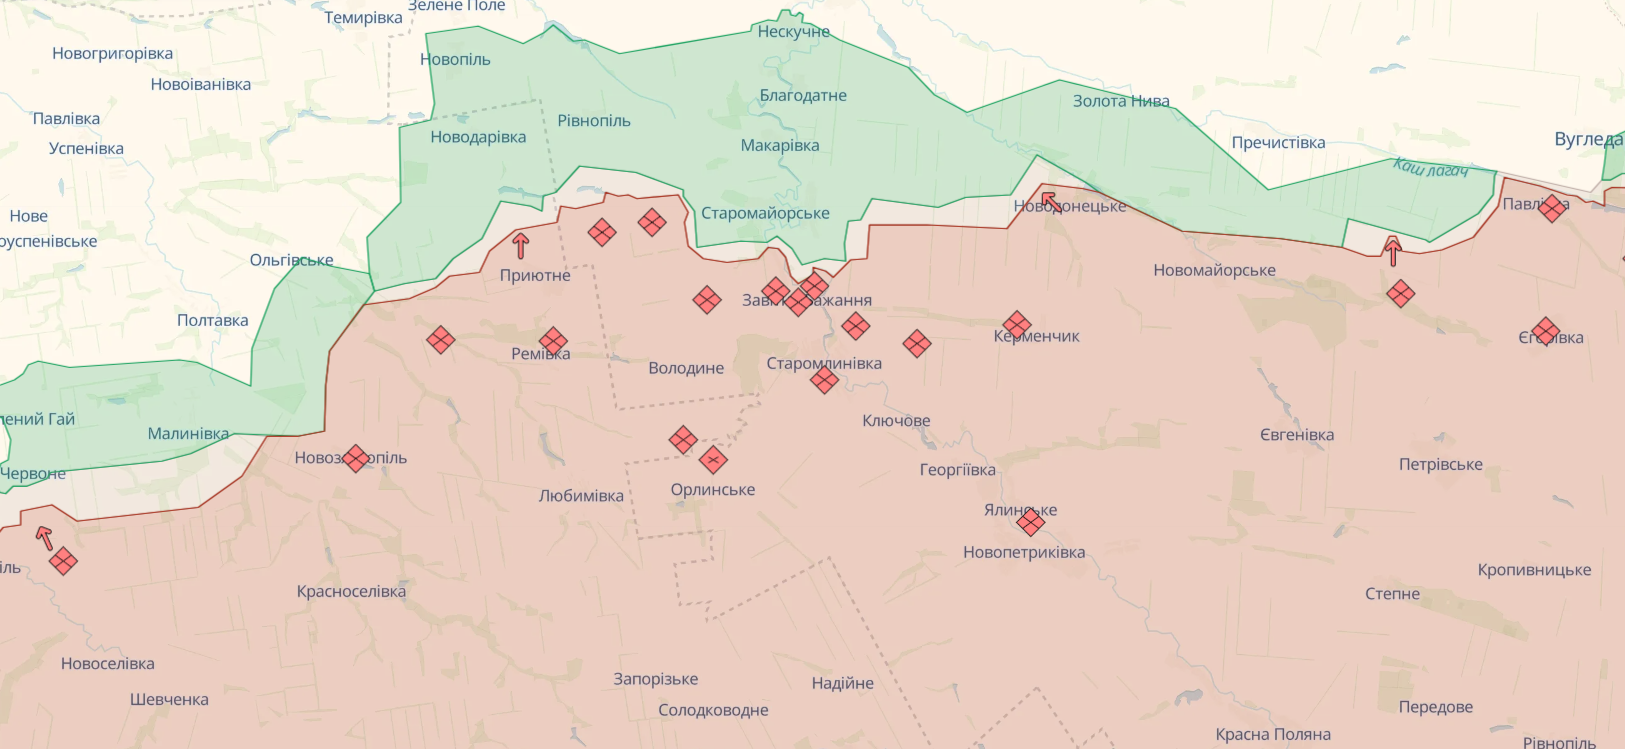 Війська РФ нарощують мінно-вибухові загородження на Бєлгородщині і атакують ЗСУ на низці напрямків  фронту  – Генштаб 